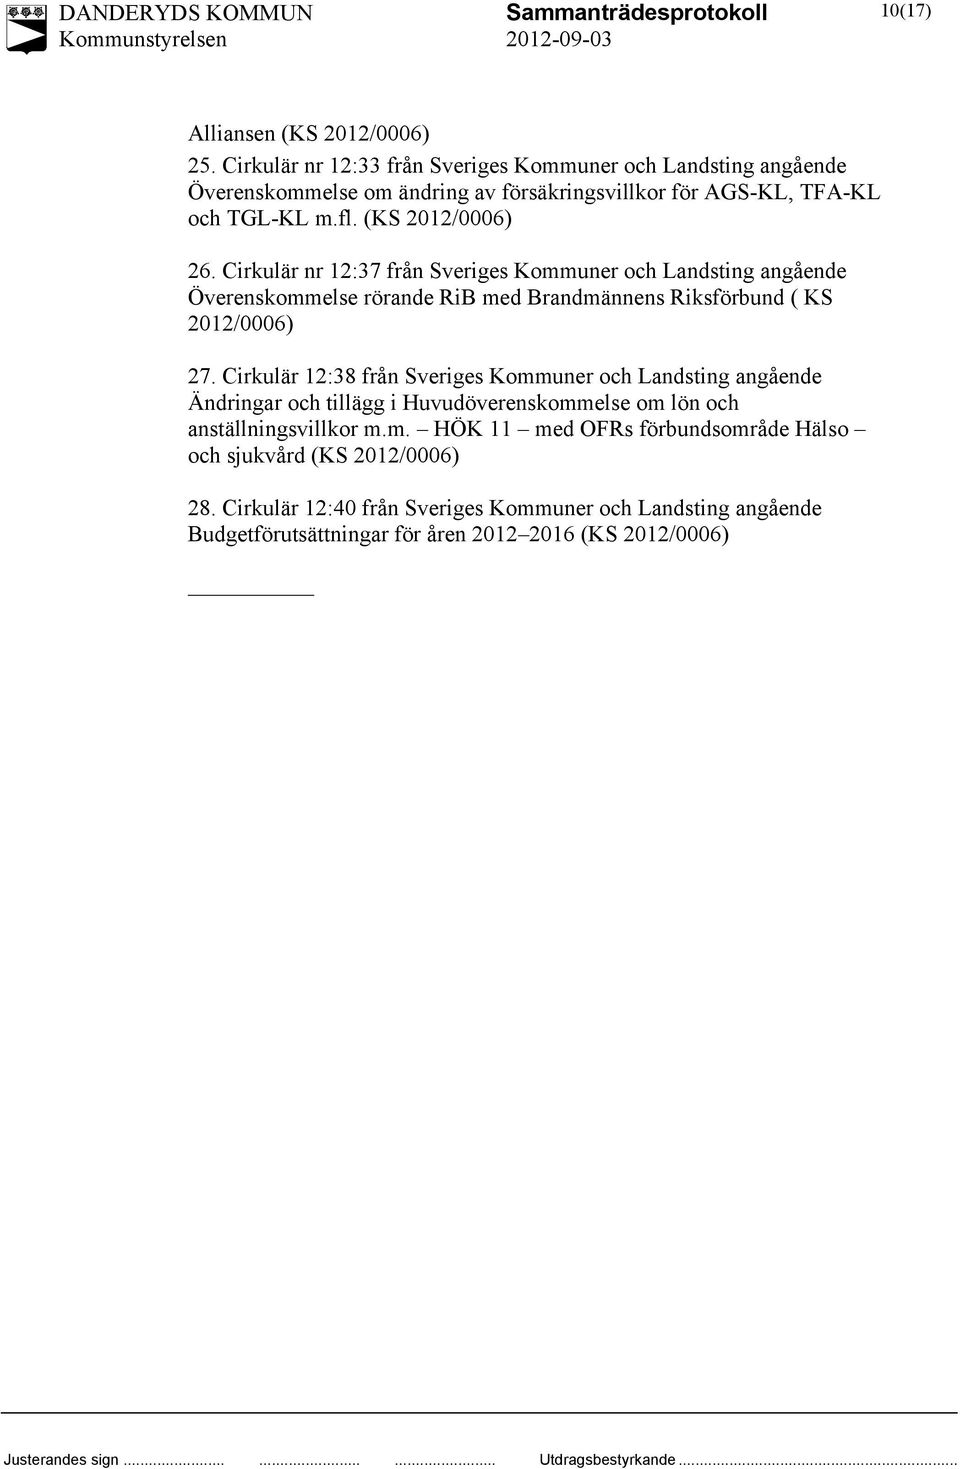 Cirkulär nr 12:37 från Sveriges Kommuner och Landsting angående Överenskommelse rörande RiB med Brandmännens Riksförbund ( KS 2012/0006) 27.